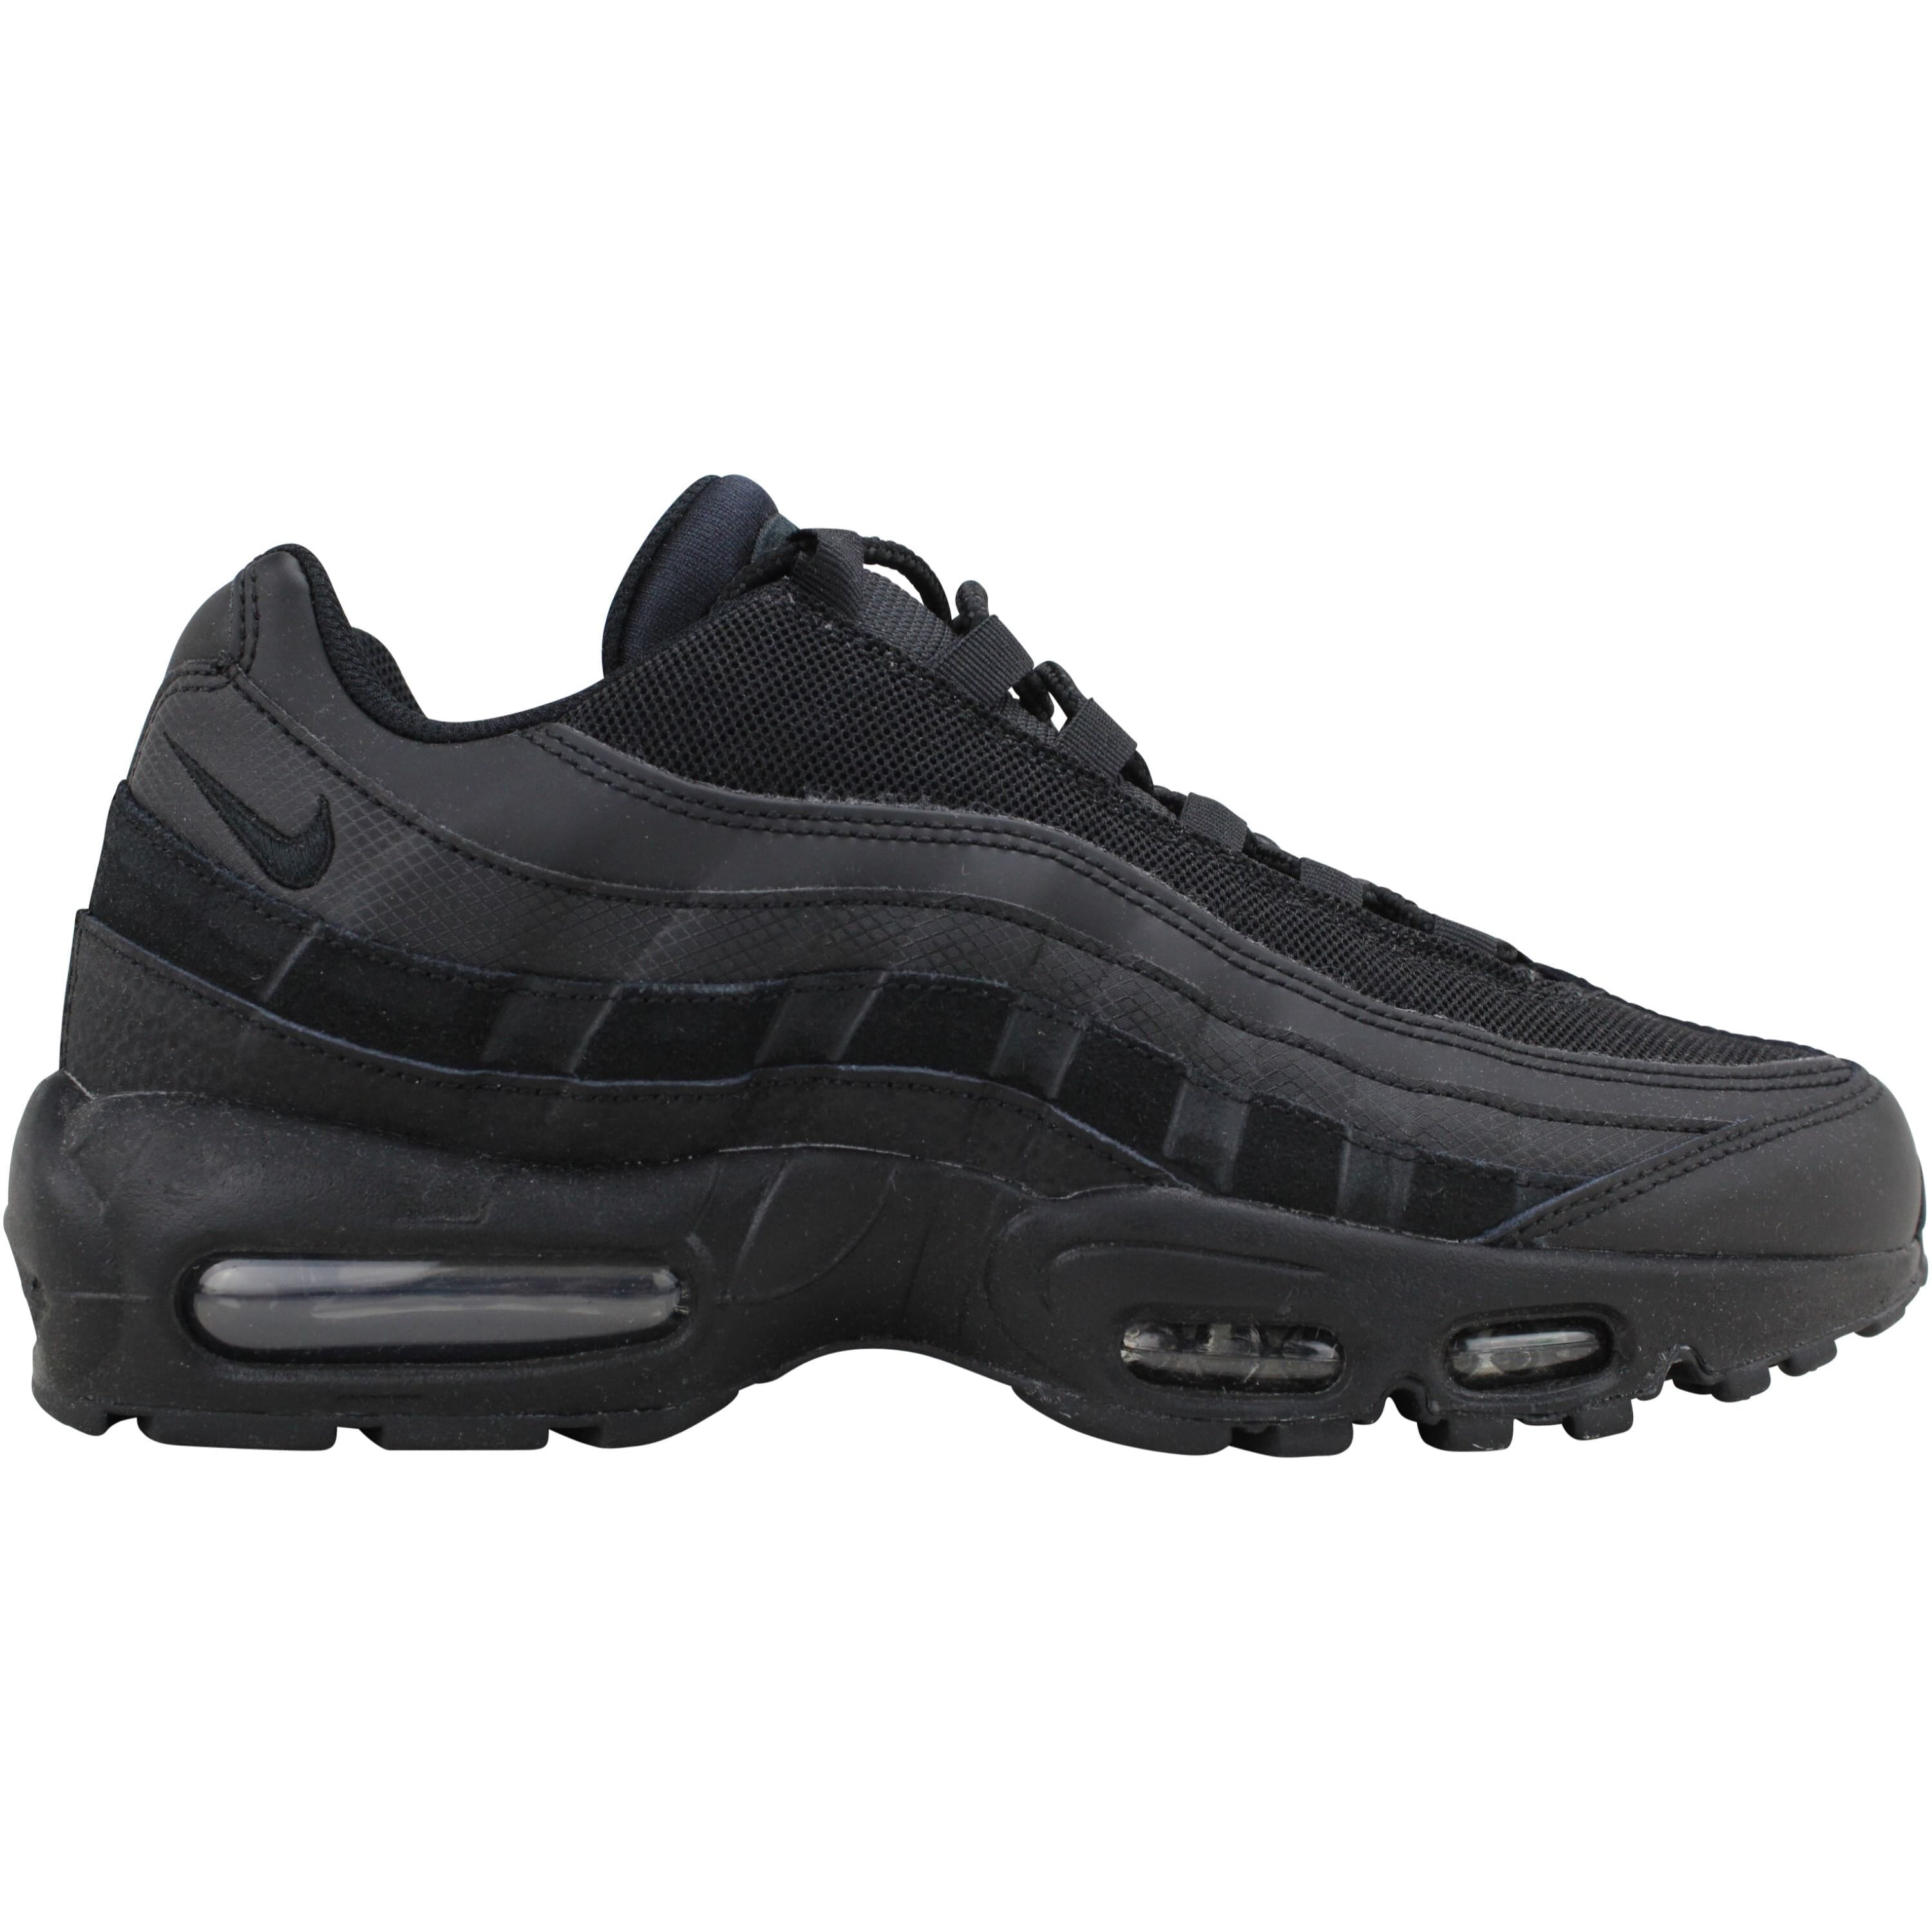 Air Max 95 Essential Men's Shoes Black-Dark Grey ci3705-001 - Walmart.com